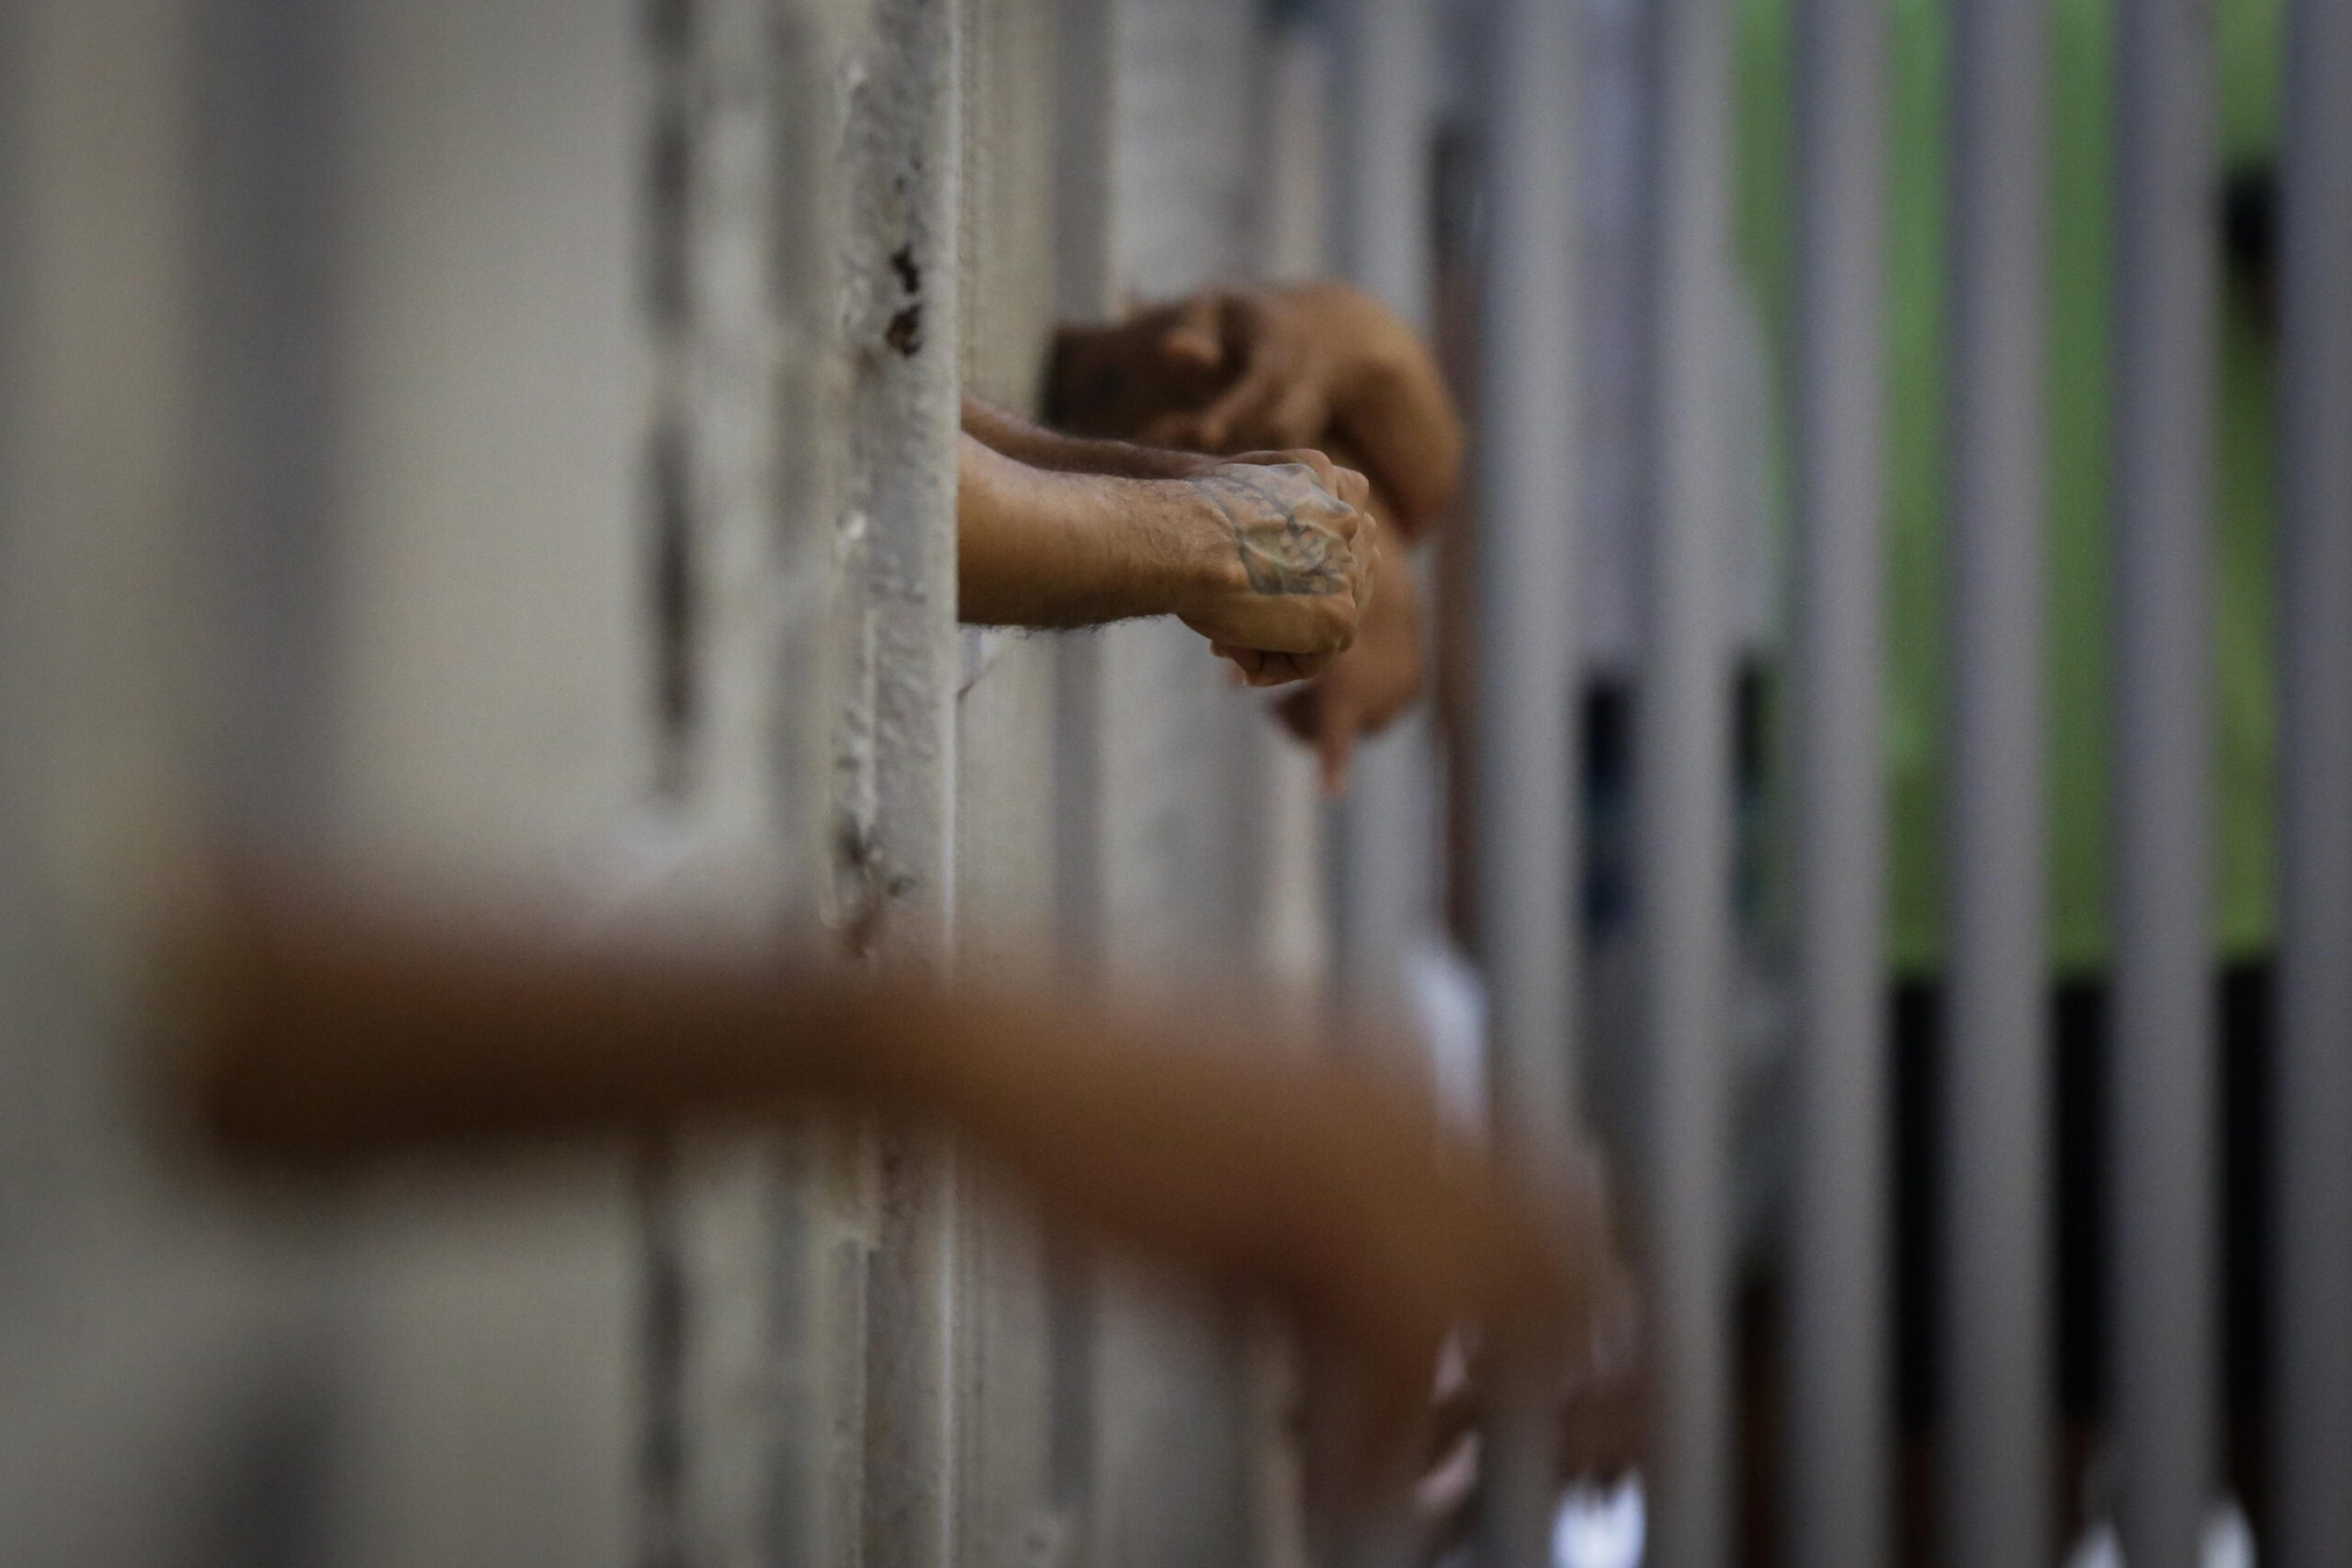 Poliziotti ai domiciliari per violenze e torture sui detenuti: sono 5 gli indagati